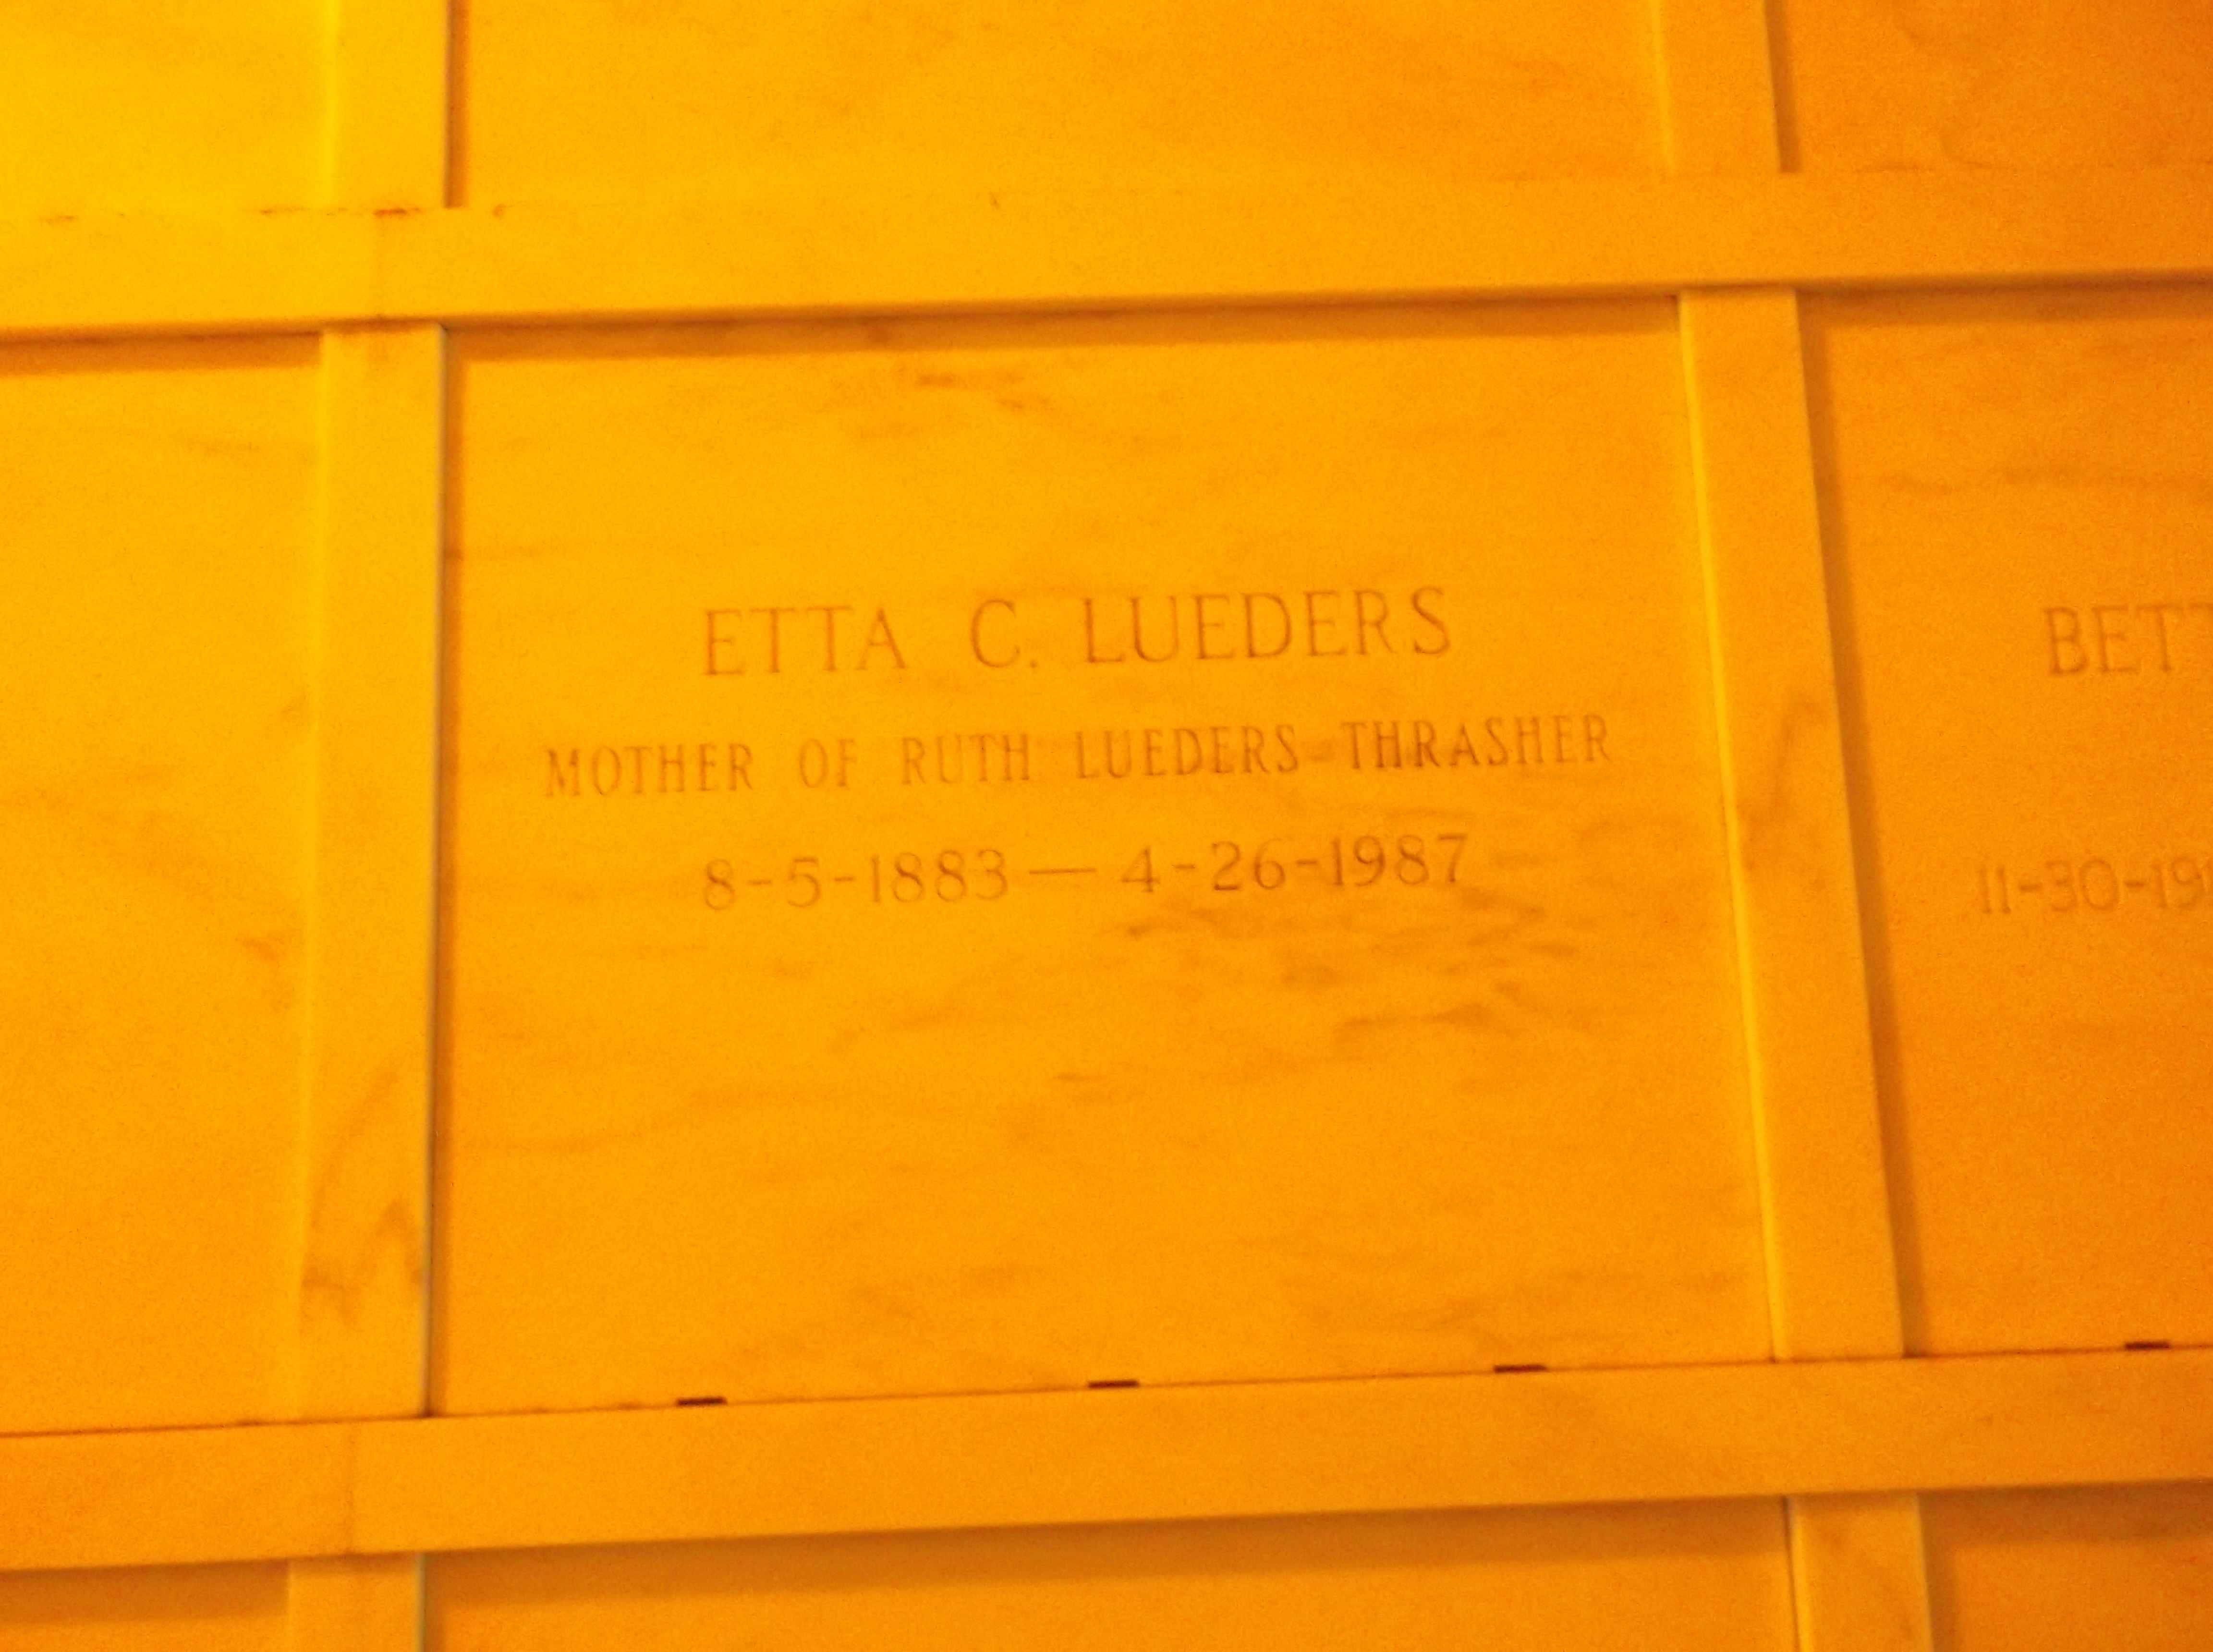 Etta C Lueders